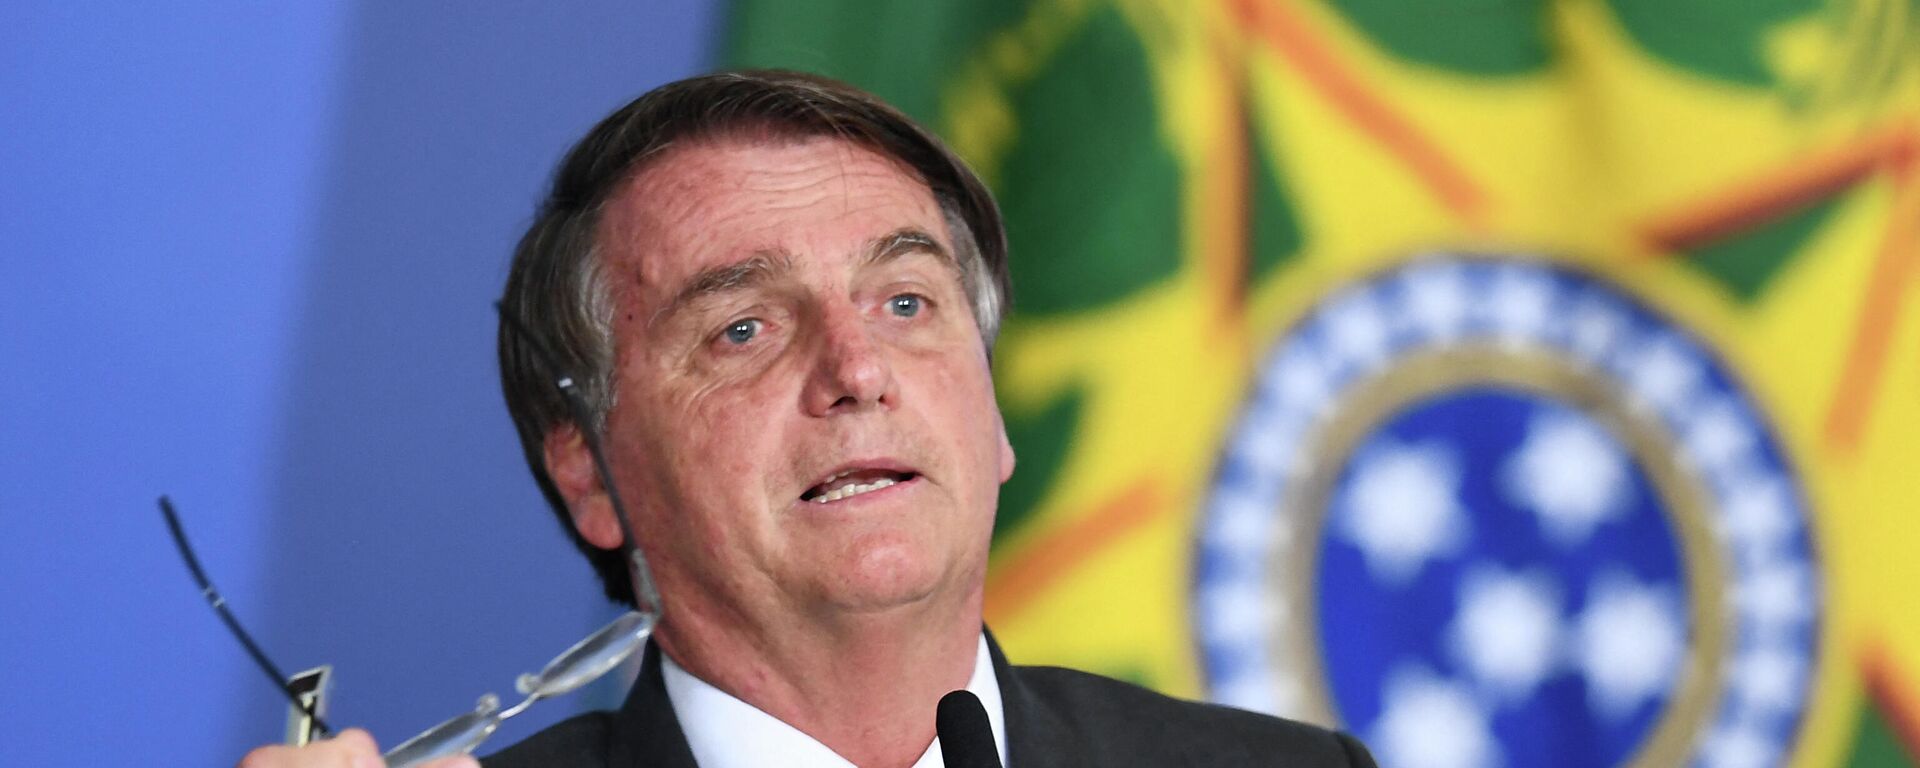 O presidente Jair Bolsonaro discursa durante cerimônia no Palácio do Planalto, em Brasília, em 7 de dezembro de 2021 - Sputnik Brasil, 1920, 26.01.2022